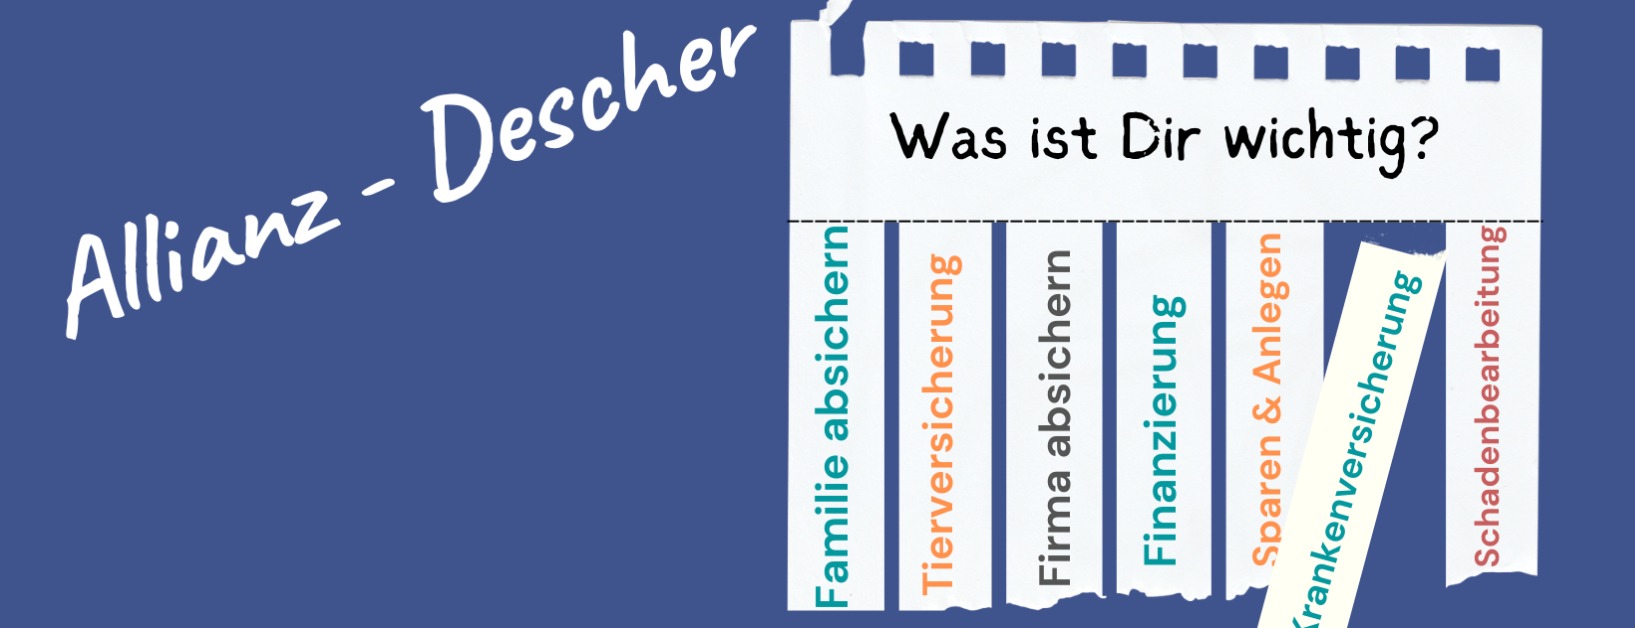 Allianz Versicherung Andre Descher Bad Lobenstein - Titelbild "was ist Dir wichtig?"